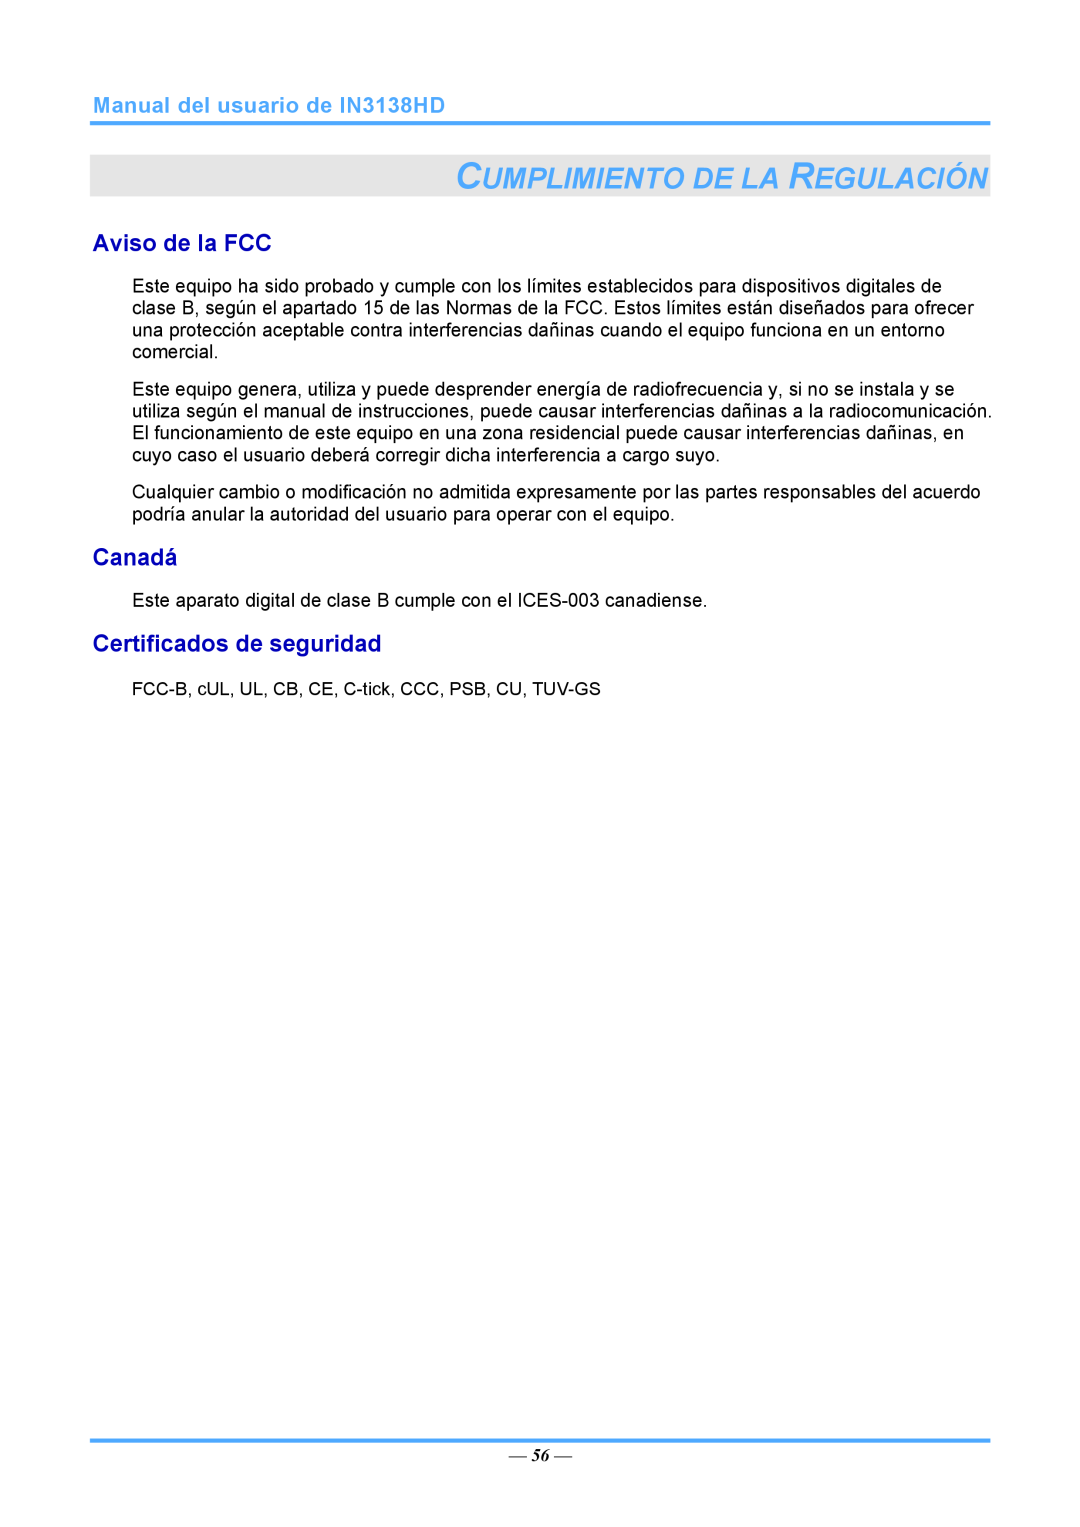 InFocus 3534324301, IN3138HD manual Cumplimiento De La Regulación, Aviso de la FCC, Canadá, Certificados de seguridad 